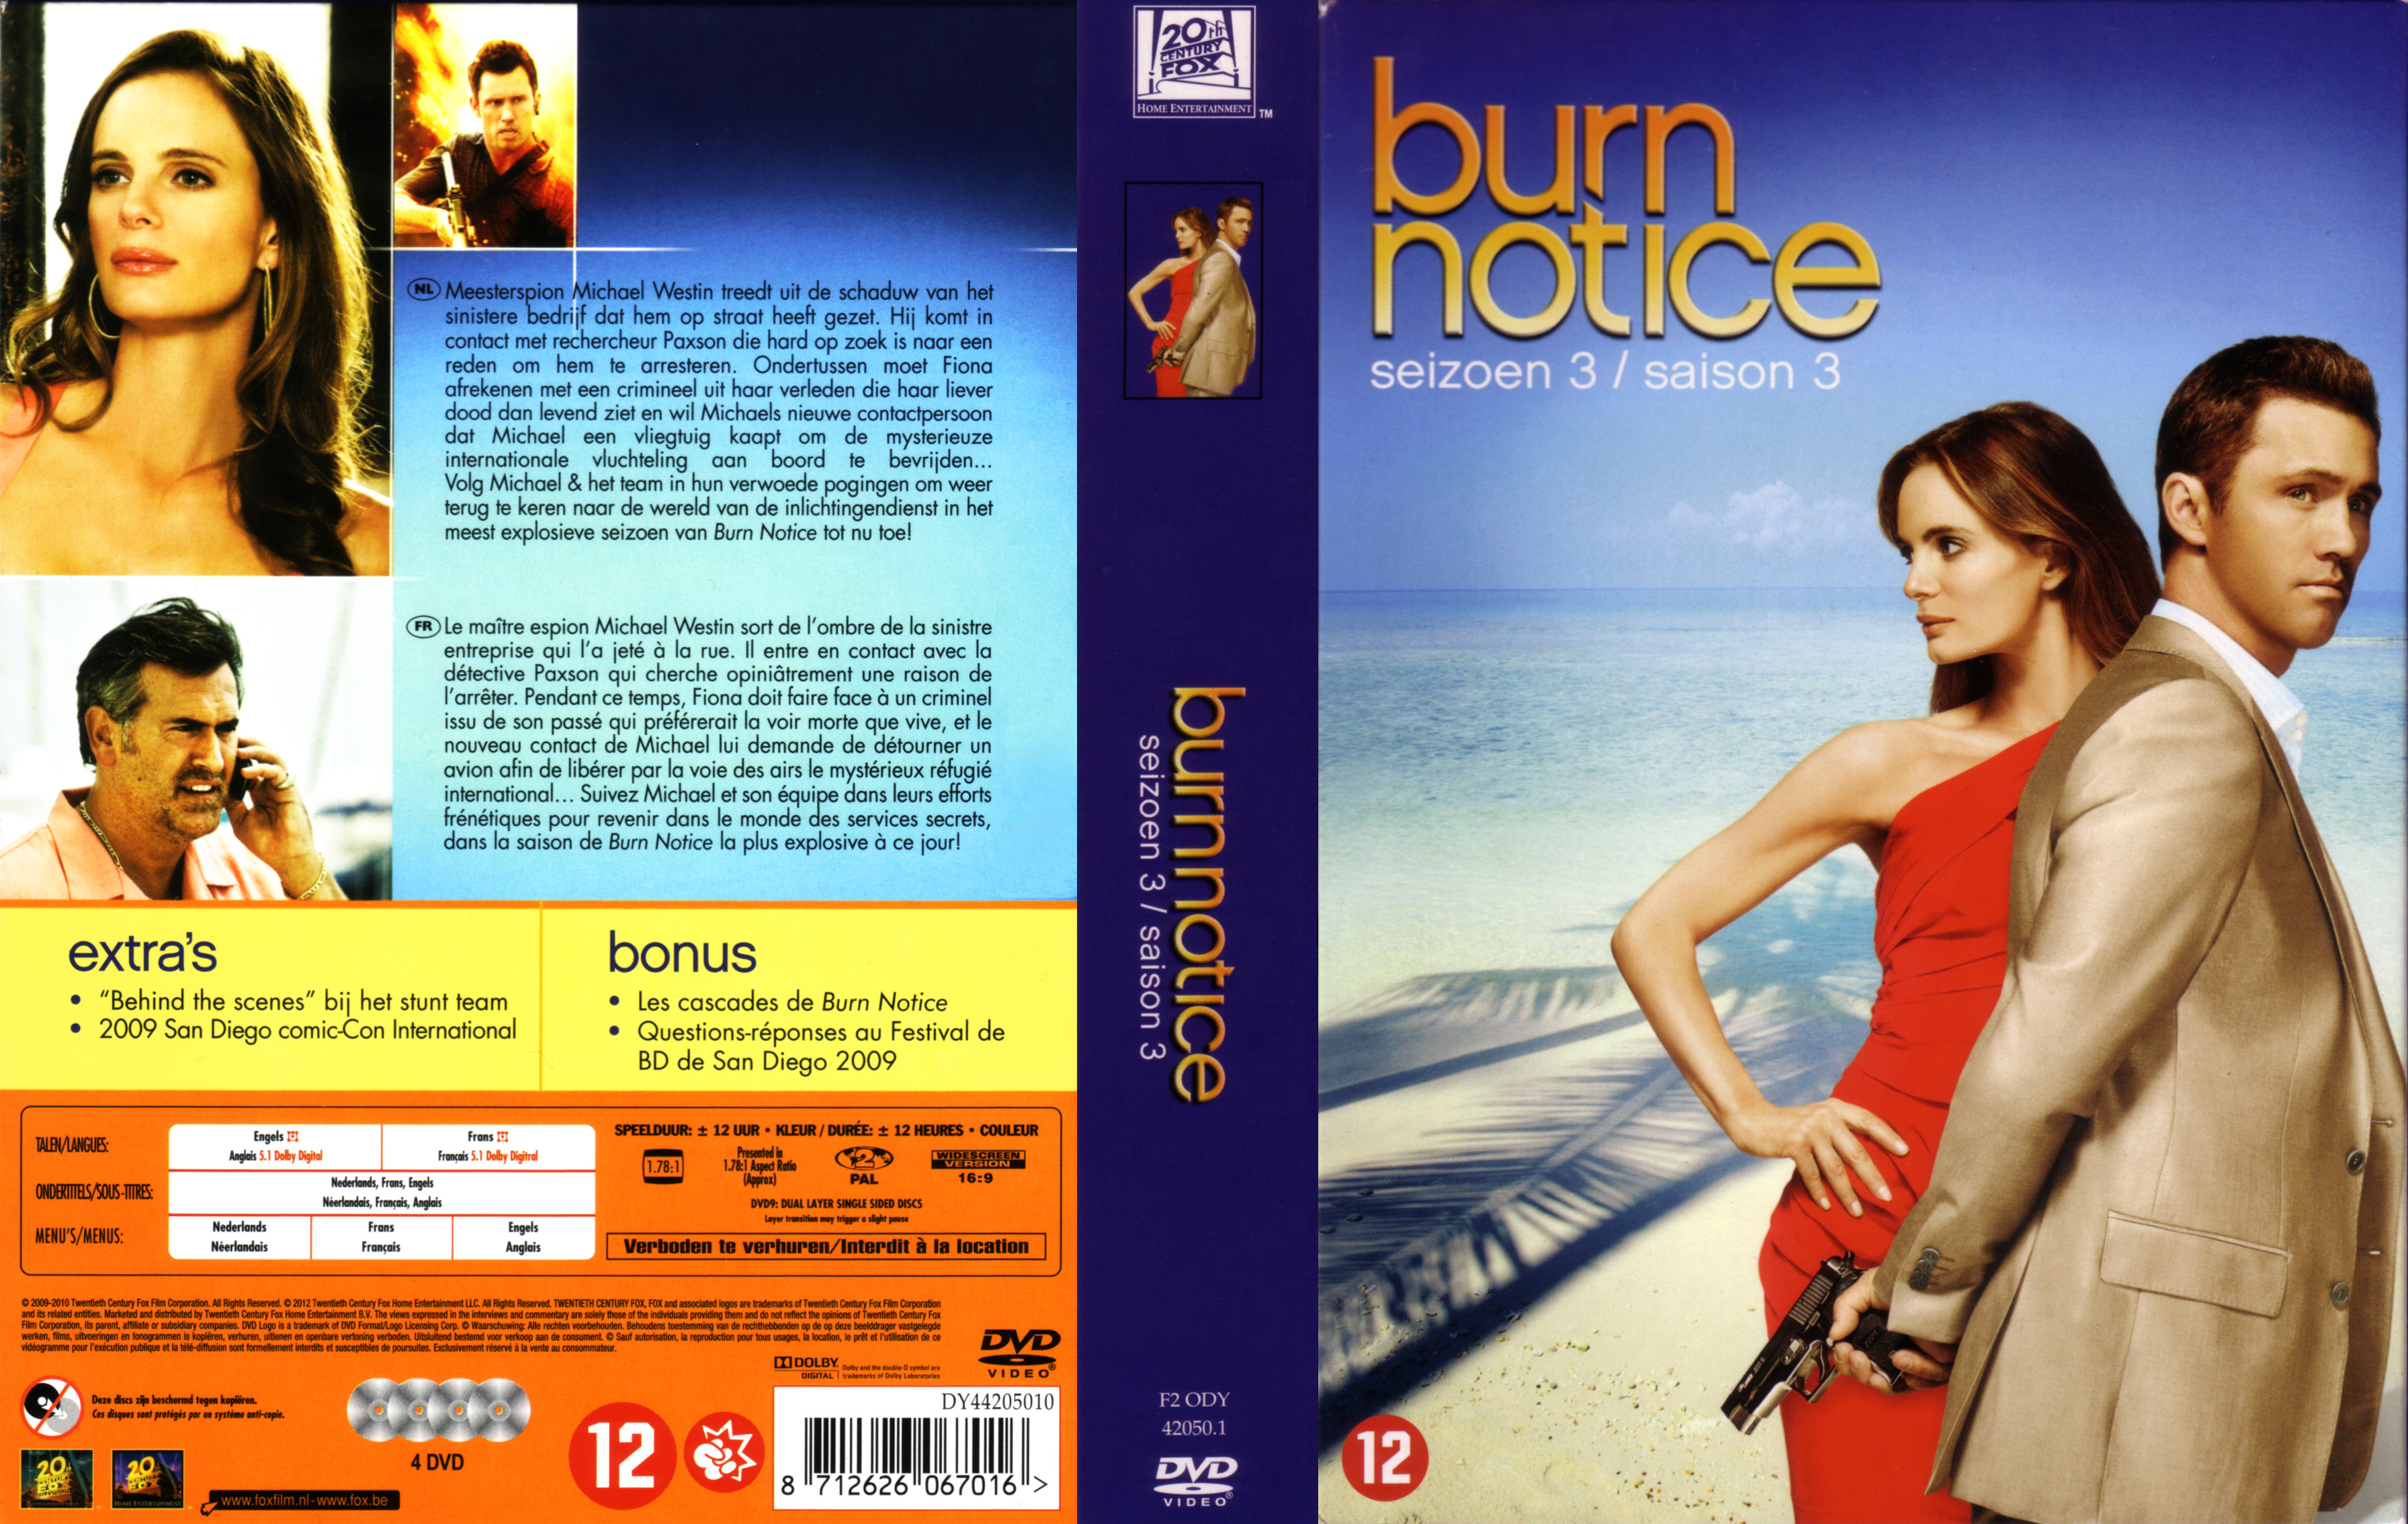 Jaquette DVD Burn notice Saison 3